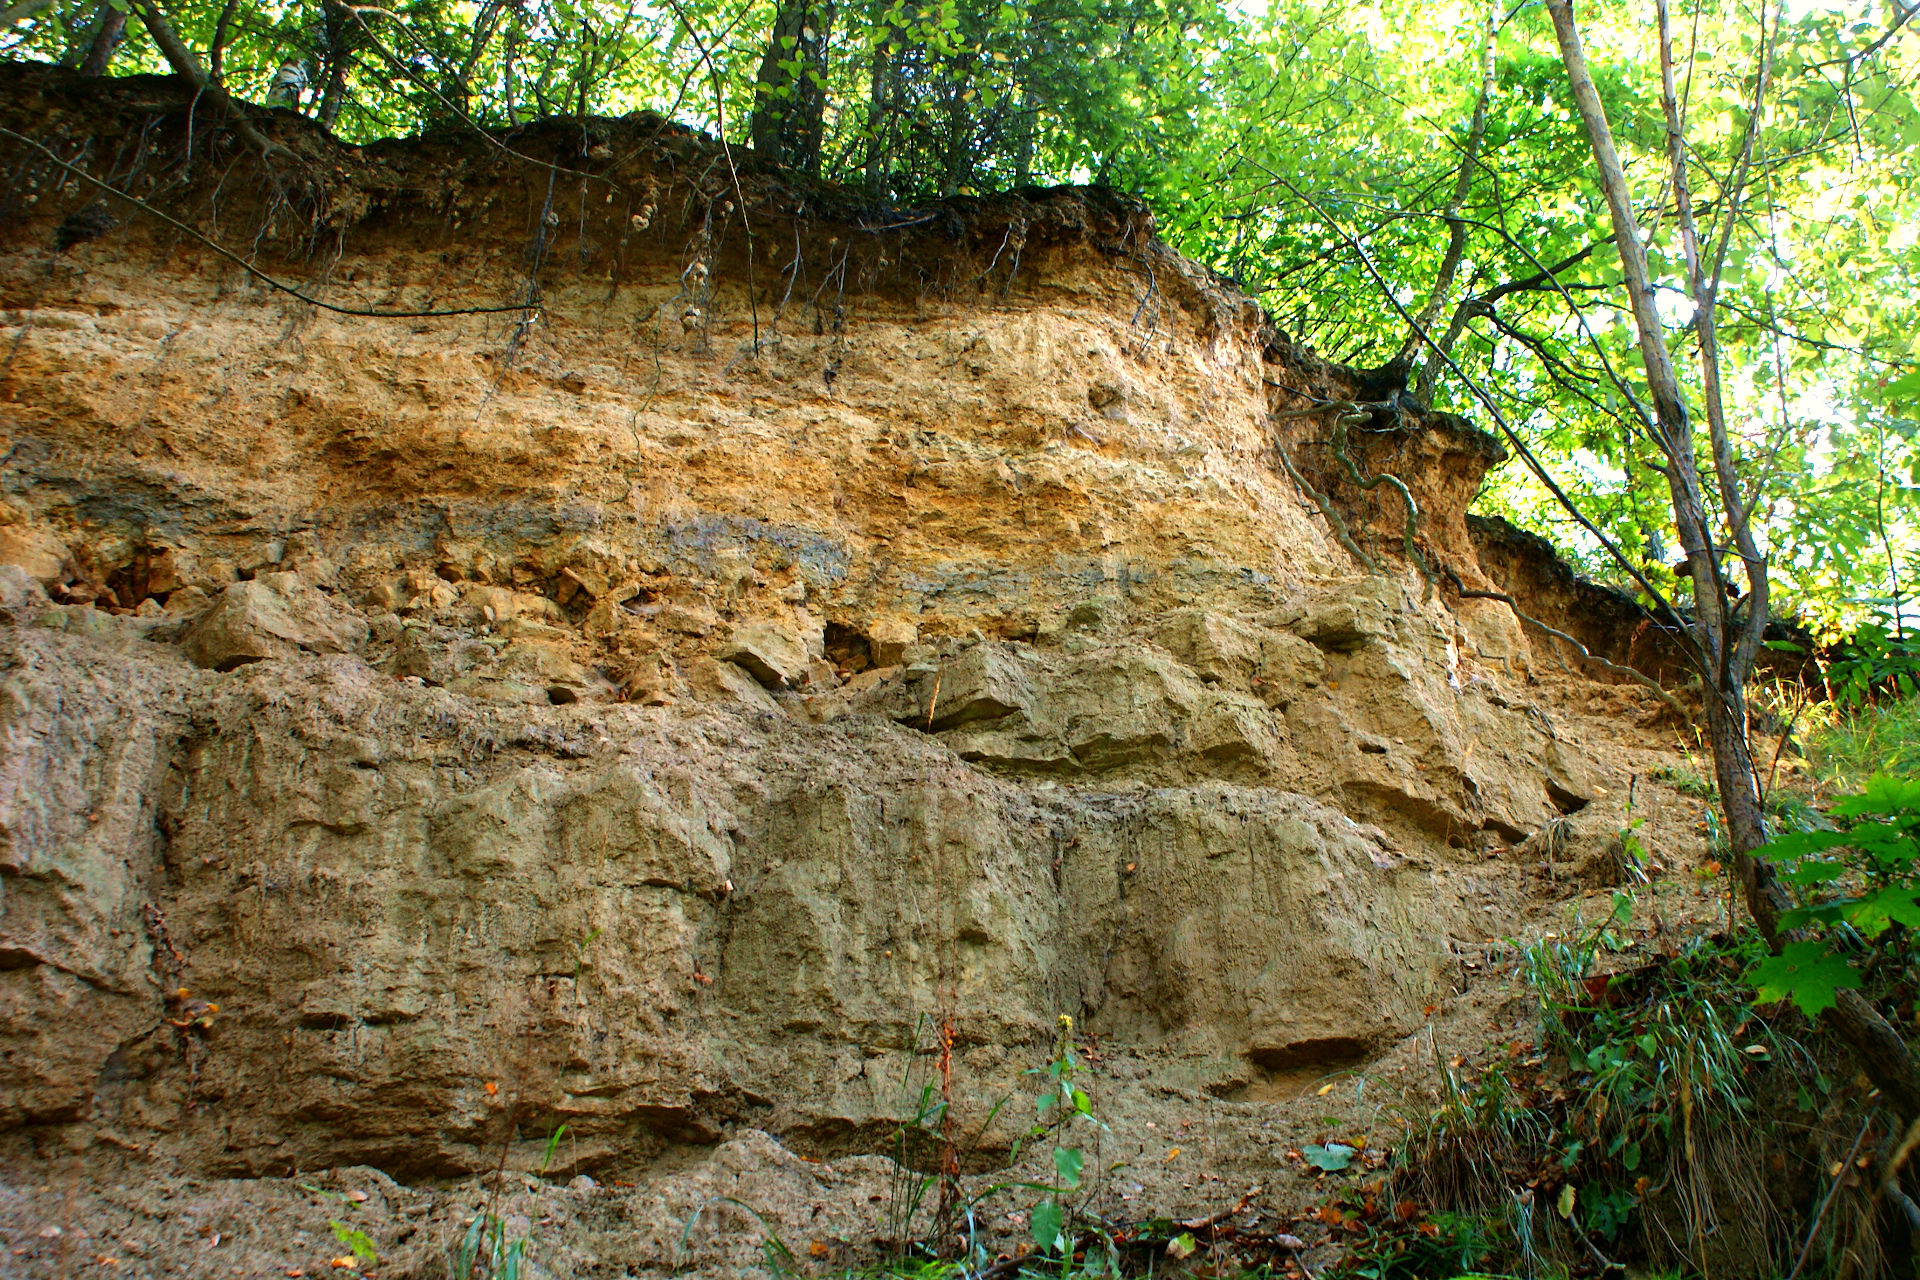 Odsłonięcie geologiczne w Młynku (gmina Brody). Widać tam styk osadów najwyzszego liasu (jura dolna) i najnizszego doggeru (jura srodkowa). Wyróżnia się tu aż osiem warstw skalnych.